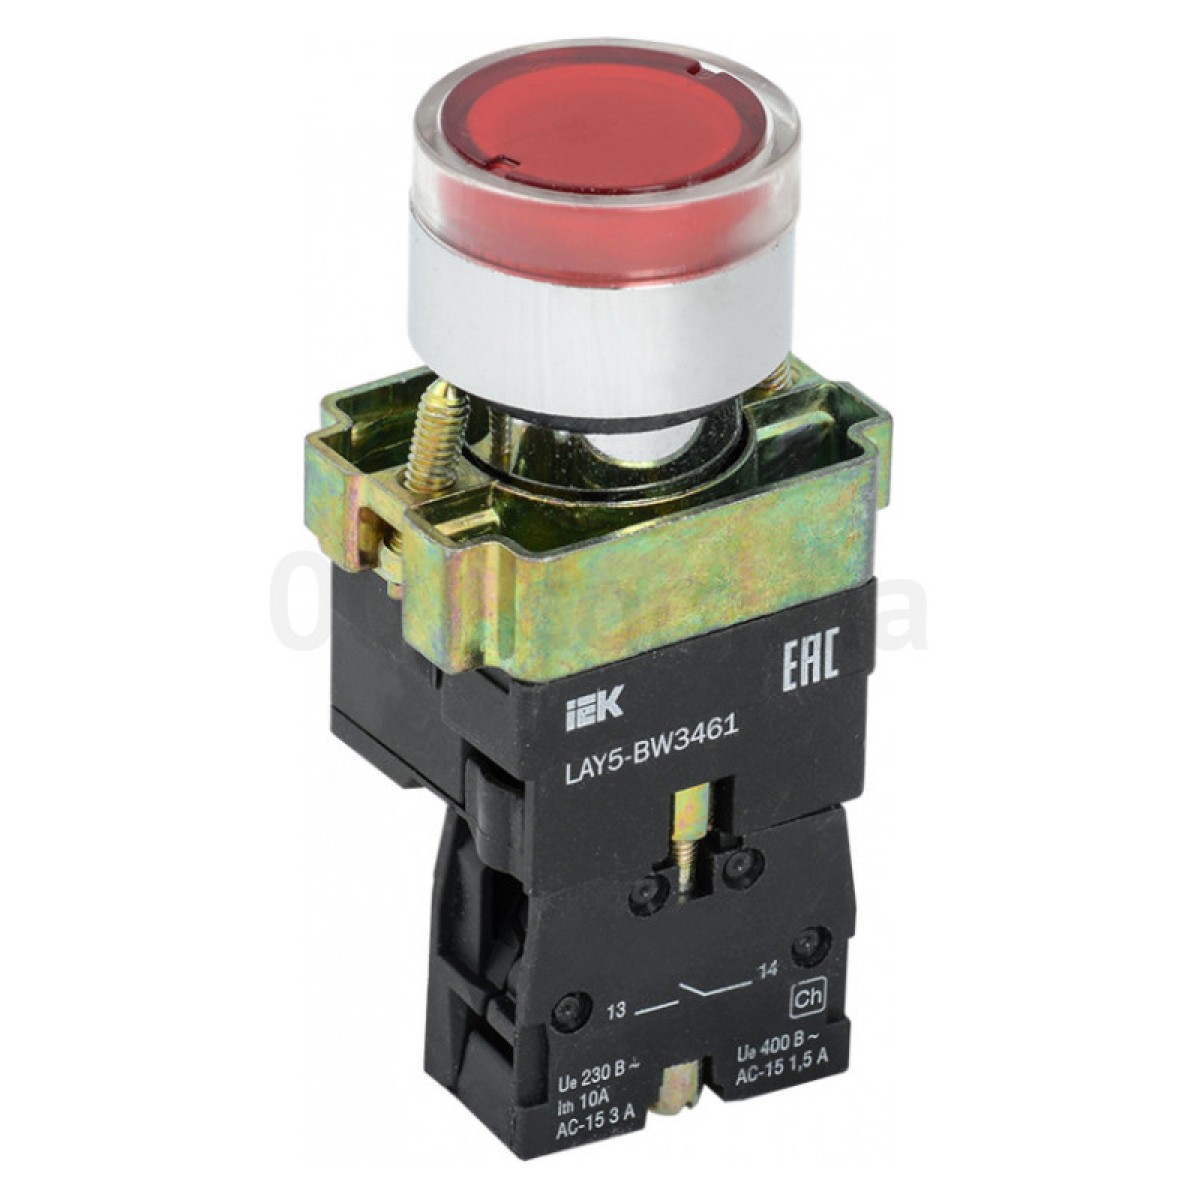 Кнопка управления LAY5-BW3461 с подсветкой красная 1з, IEK 256_256.jpg